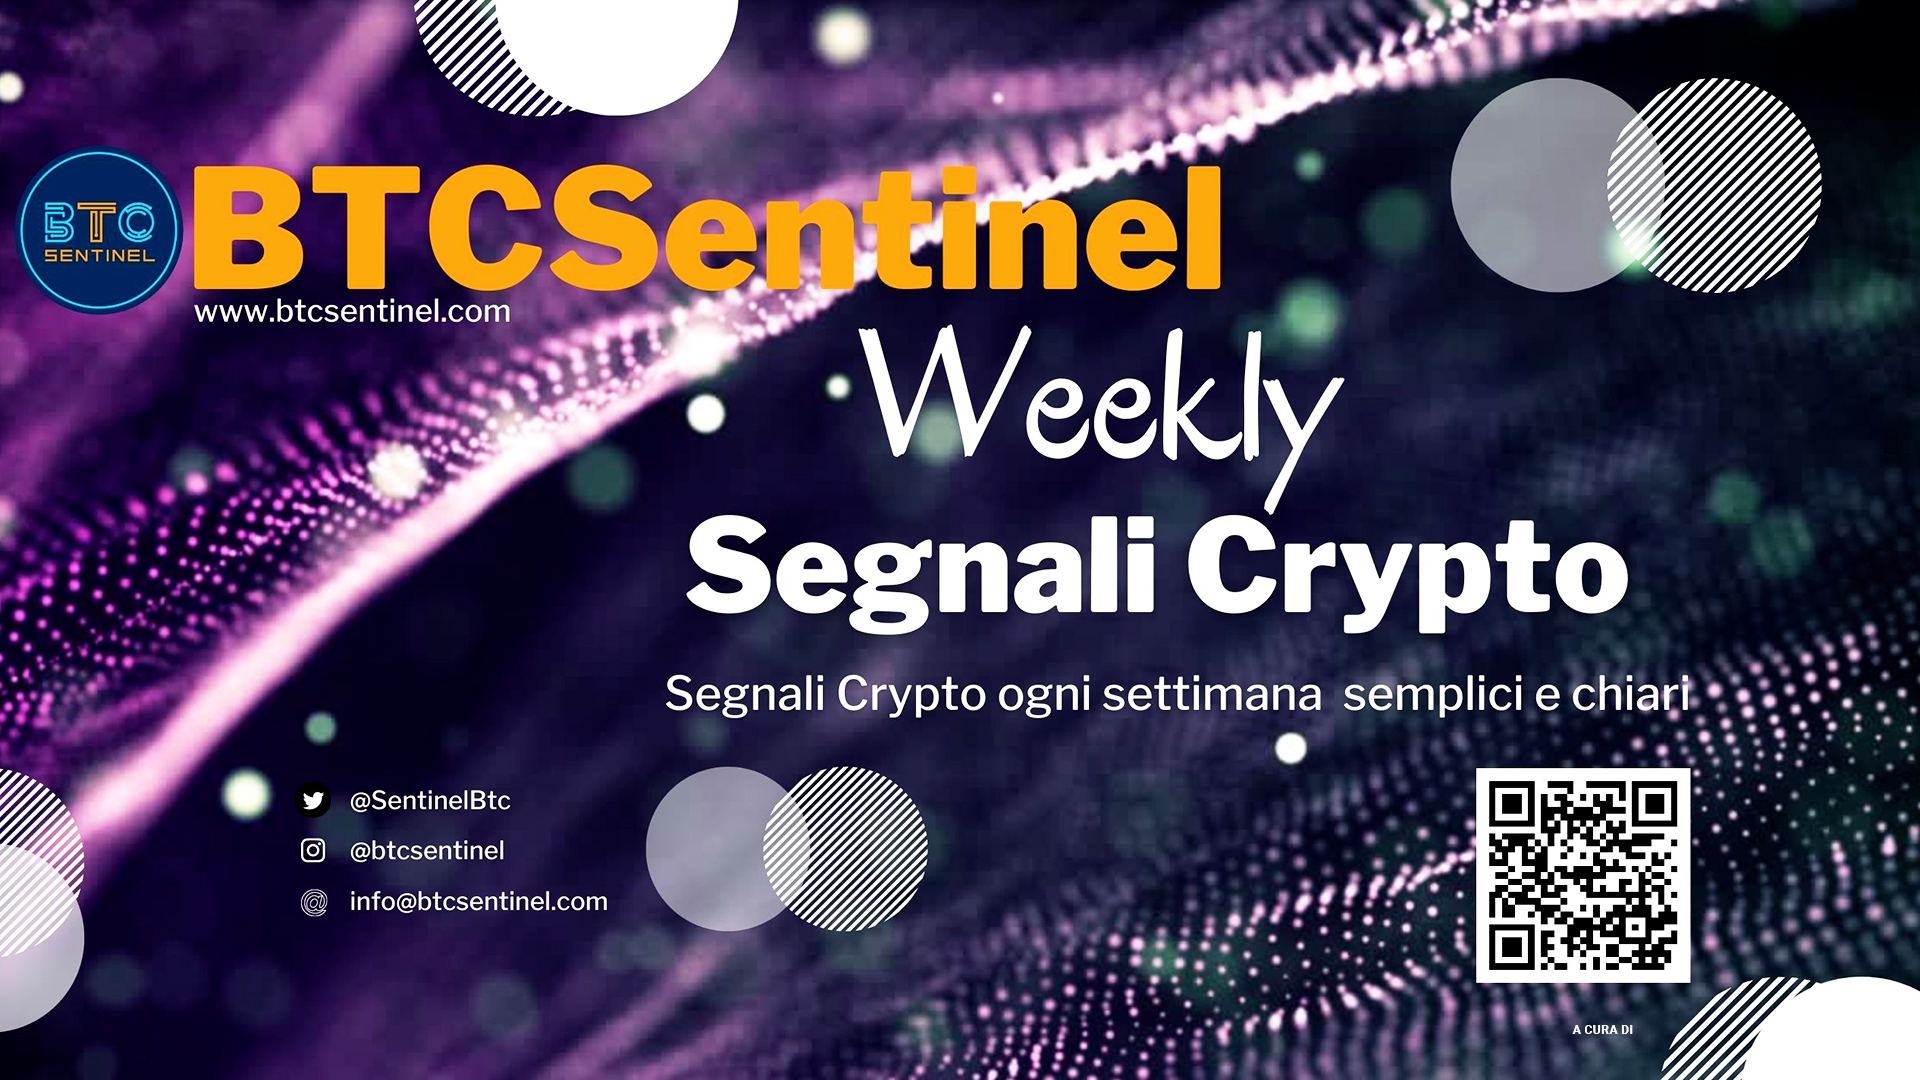 Segnali Crypto - Weekly - Notizie dal mondo cripto, settimana per settimana in modo facile e comprensibile.